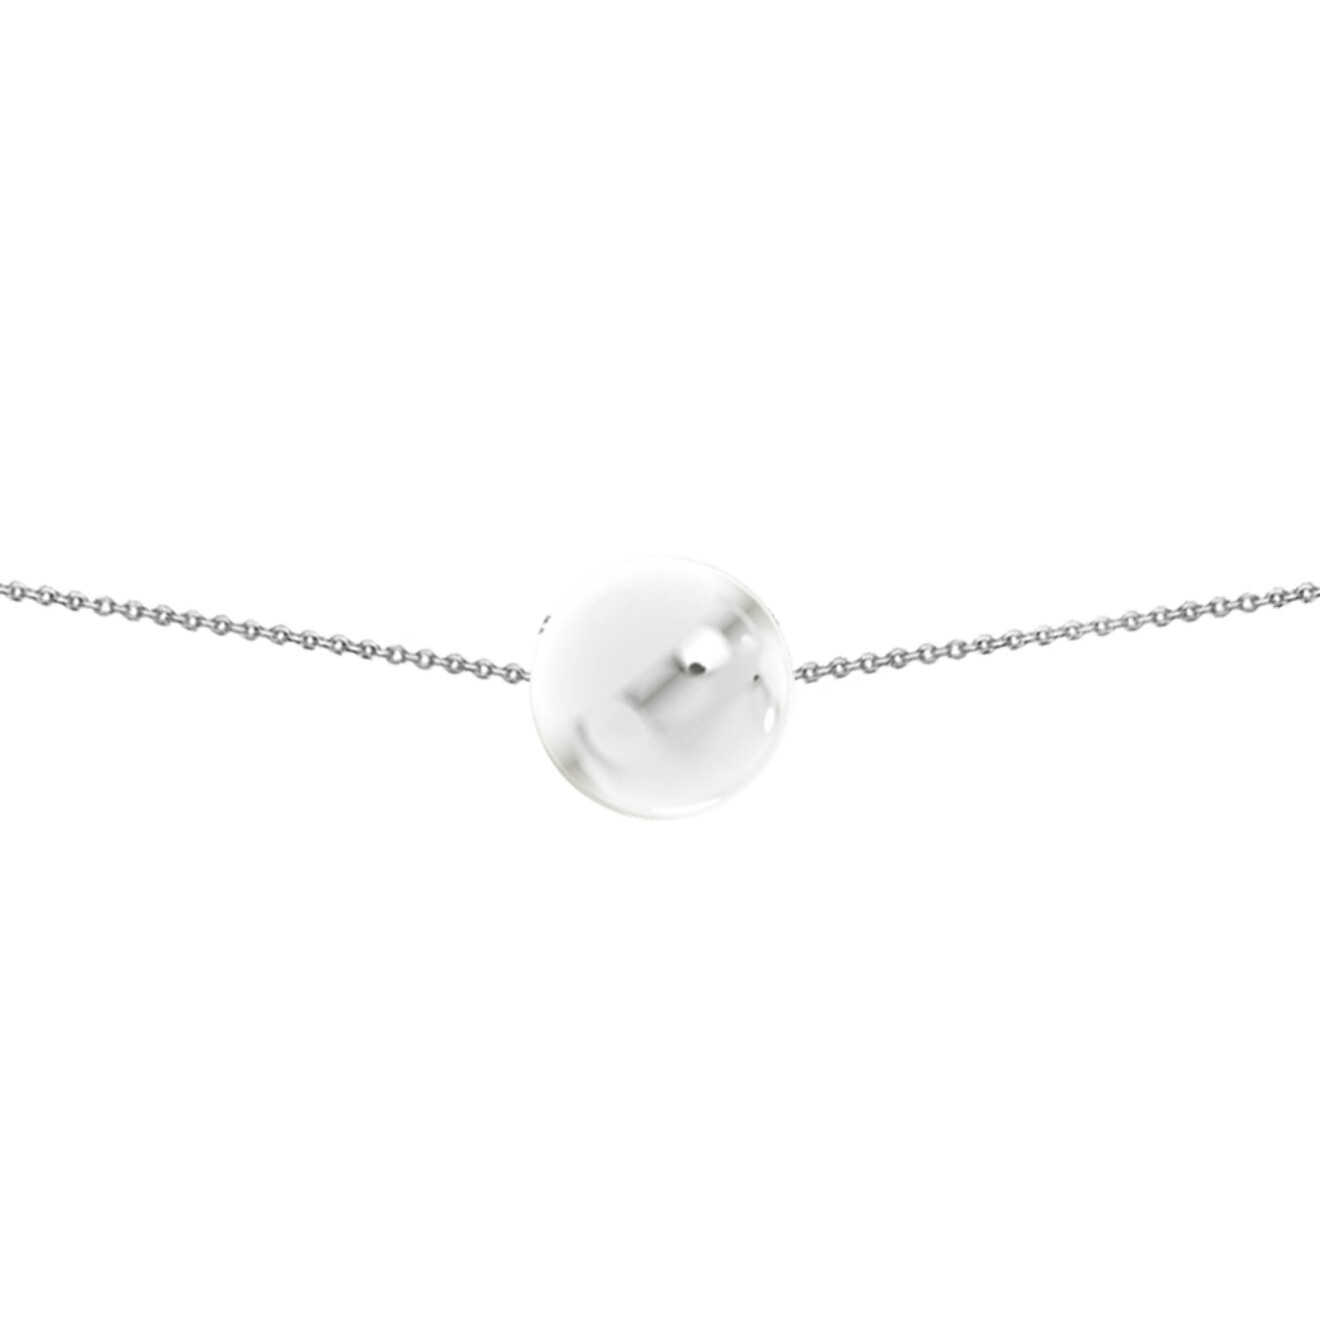 Prosto Jewelry Чокер из серебра с самым большим шаром prosto jewelry анклет из серебра с регулировкой